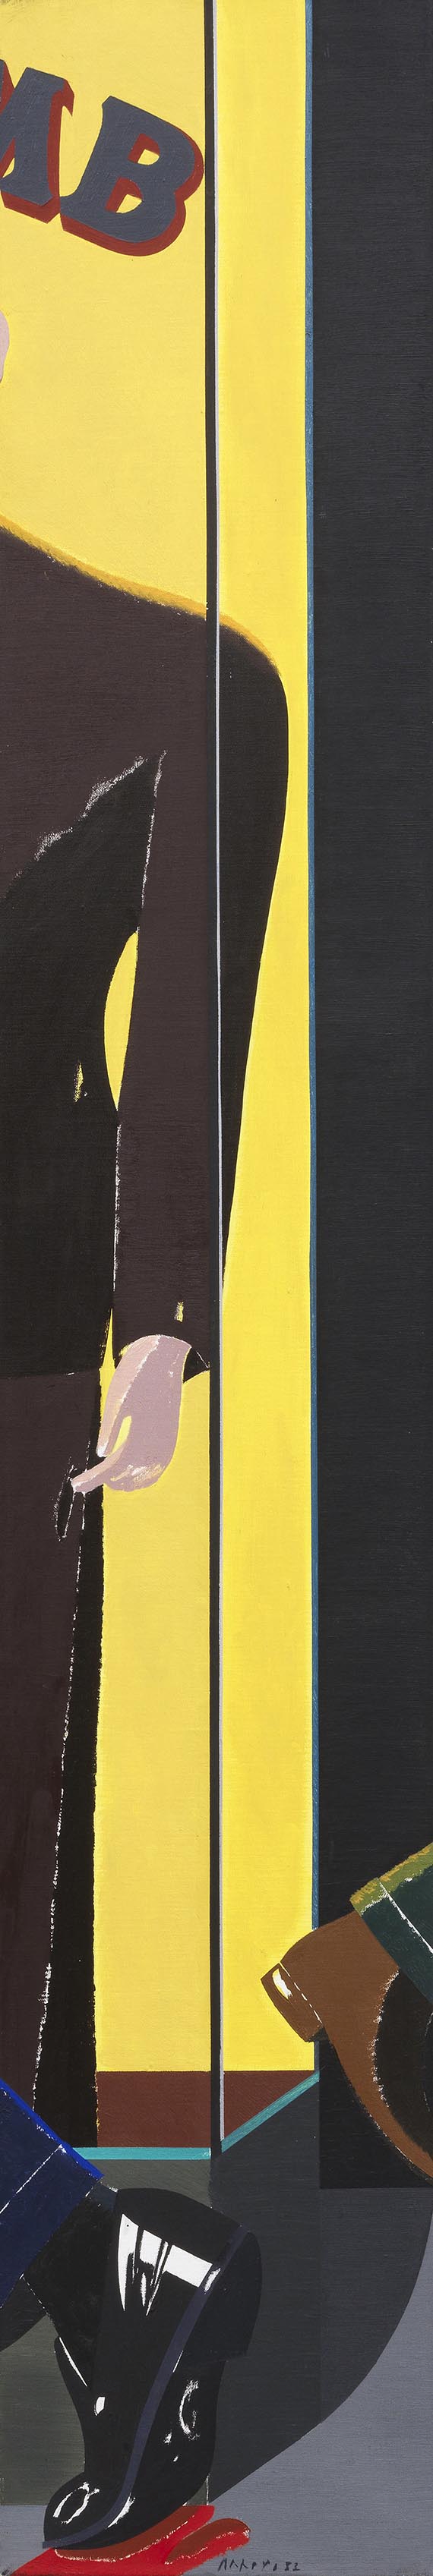 Eduardo Arroyo - Oil on canvas